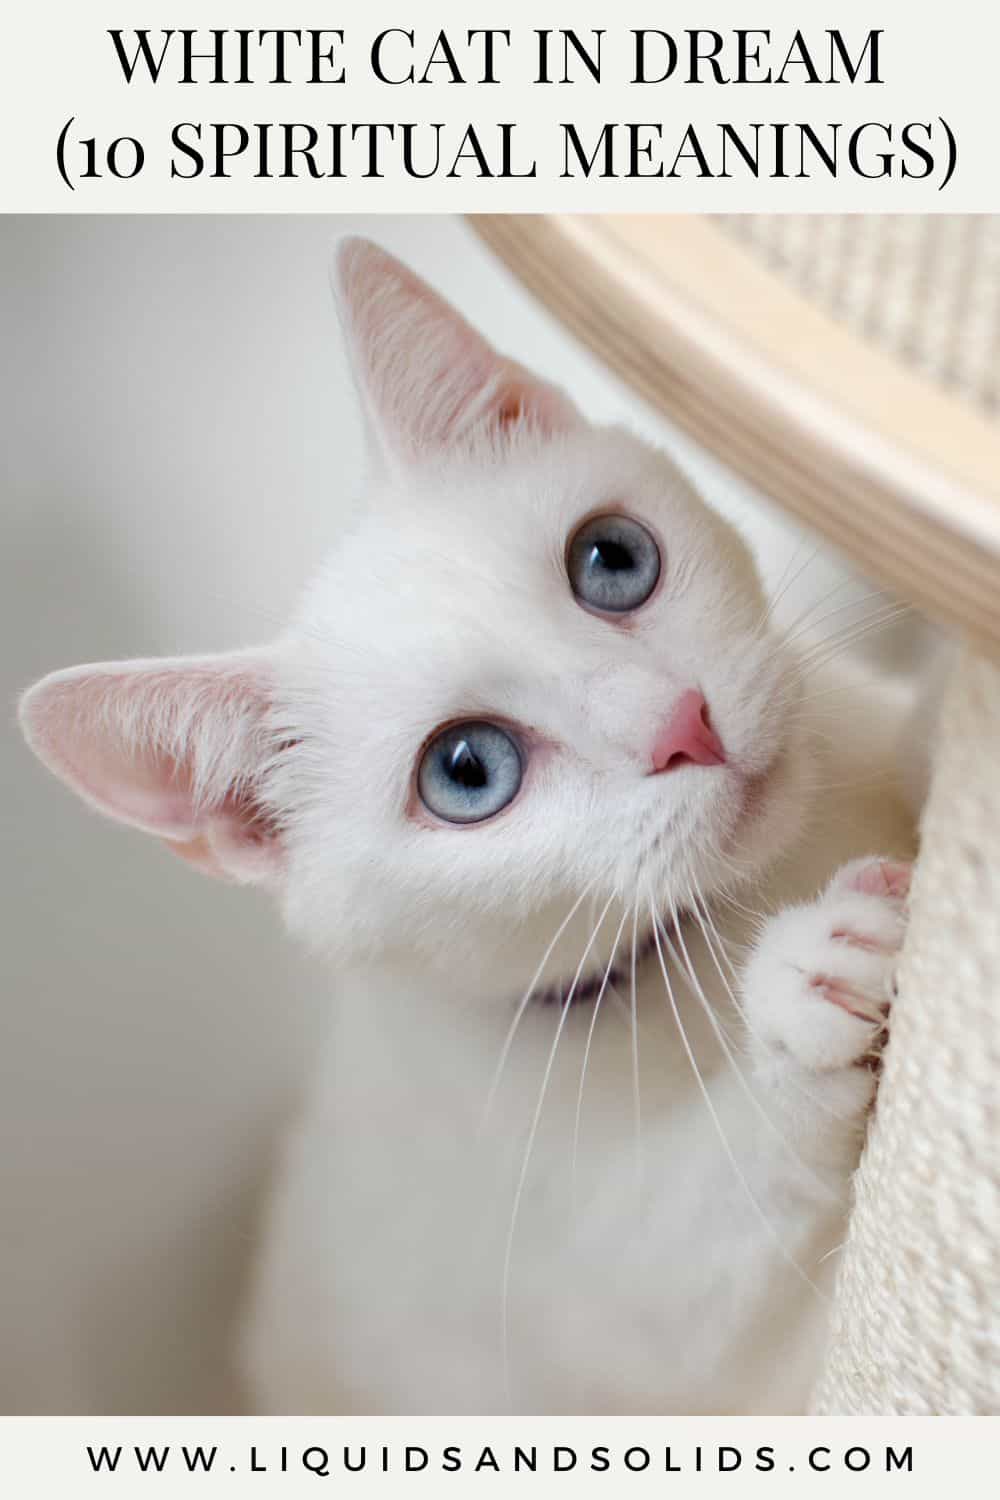  ოცნებობთ თეთრ კატაზე? (10 სულიერი მნიშვნელობა)